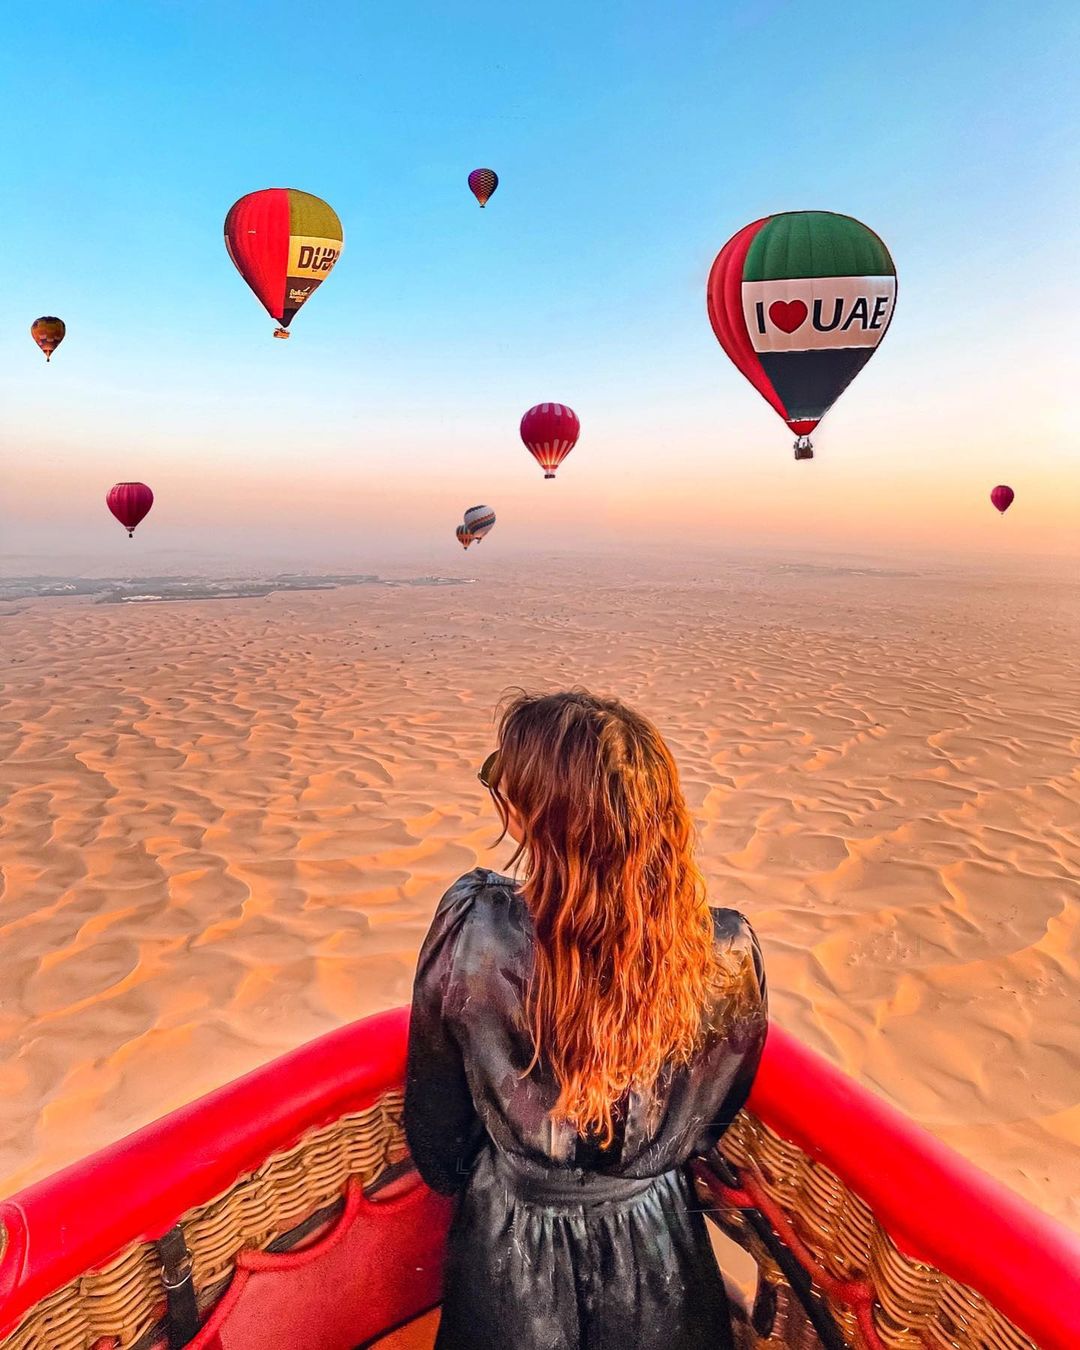 007Hot Air Balloon-Dubai - 2-15231d77e2824c3a30366789a94d72e9aee3b0ae